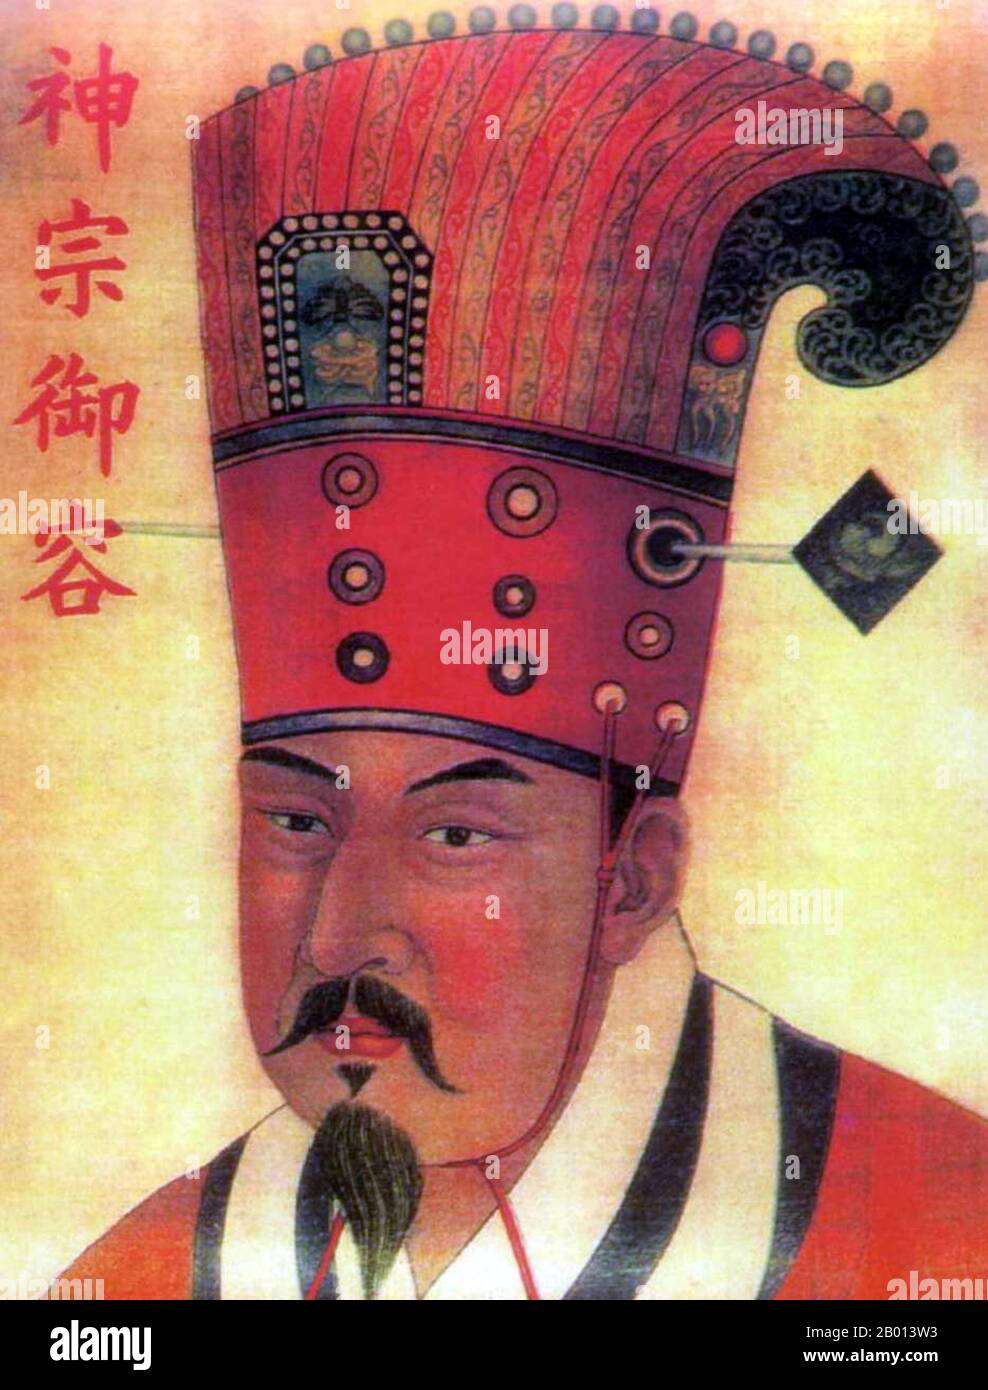 Chine : l'empereur Xuanzu (Zhao Hongyi, 899-956), père des deux premiers empereurs de la chanson Taizu et Taizong, honorés à titre posthume comme ancêtre fondateur de la dynastie Song. Peinture à défilement suspendu, Song Dynasty (960-1279). Zhao Hongyi (899-956), honoré à titre posthume comme empereur Xuanzu, était le père de Song Emperors Taizu (r. 960-976) et Taizong (976-997). Il a été général militaire pendant la période des cinq dynasties et des dix royaumes, servant sous l'empereur Zhuangzong de plus tard Tang. On dit qu'il était un cheval qualifié archer. Banque D'Images